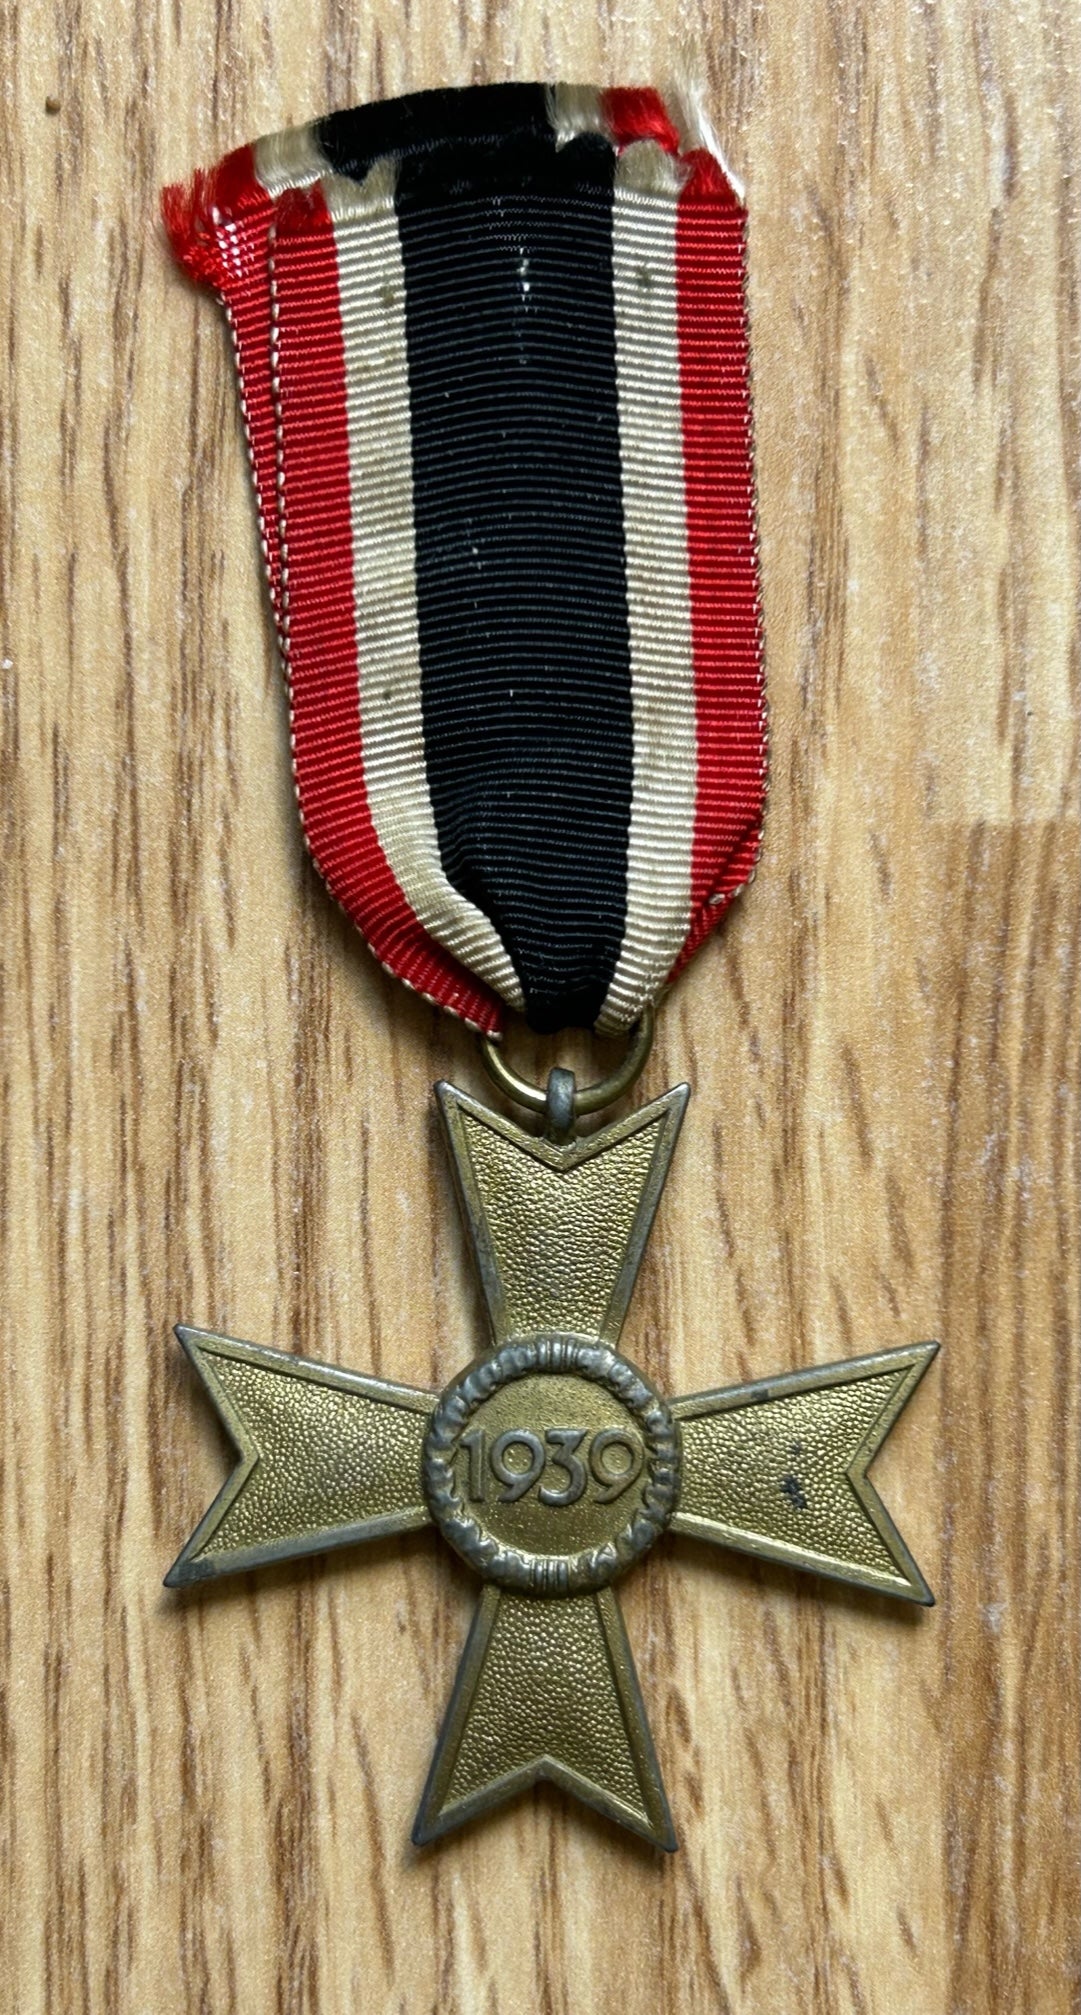 War Merit Cross 2nd Class without Swords - Maker marked 107